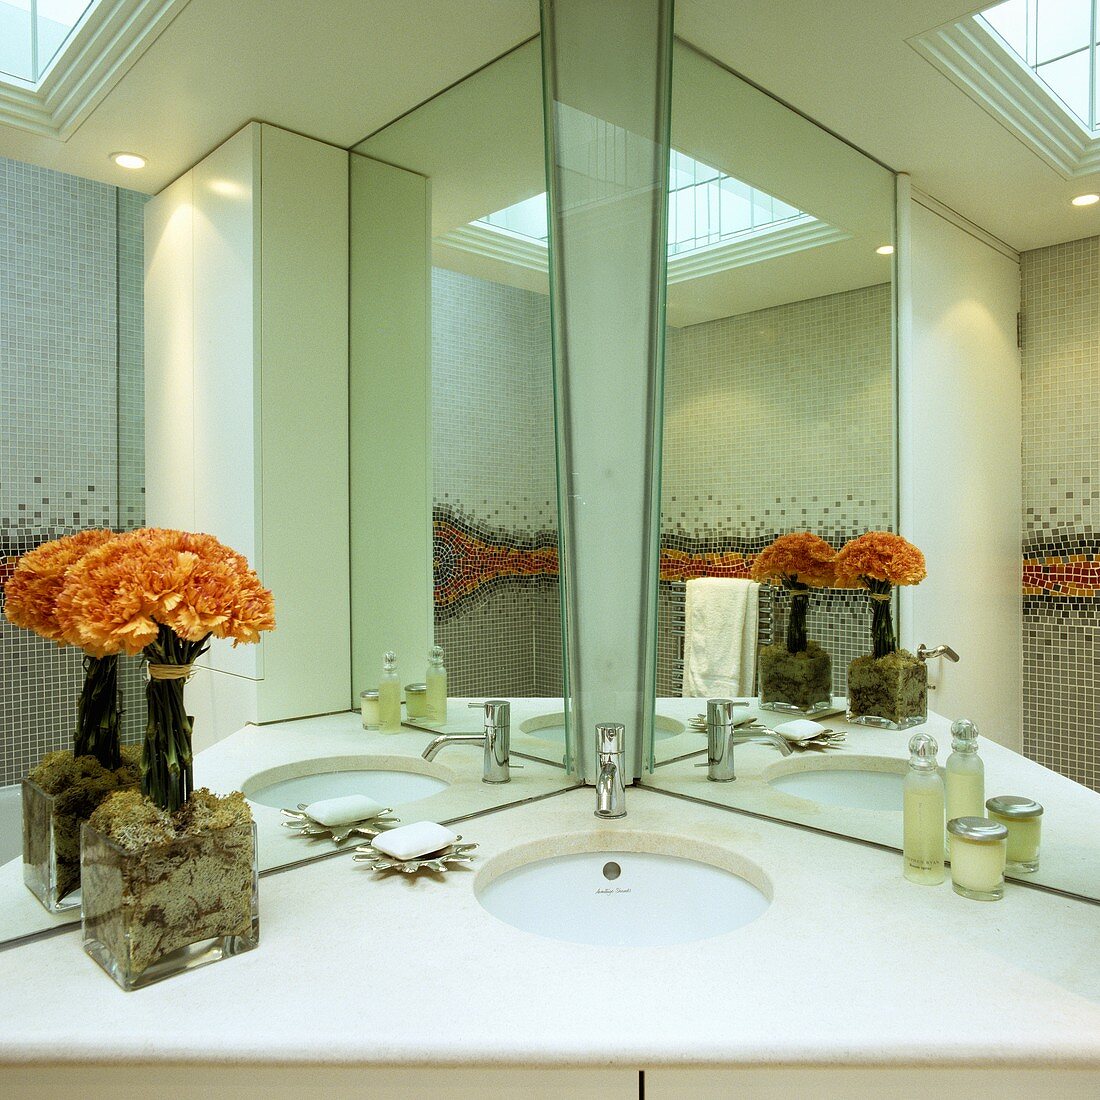 Spiegelkabinett im Badezimmer - in die Ecke platzierter Waschtisch mit weisser Steinplatte